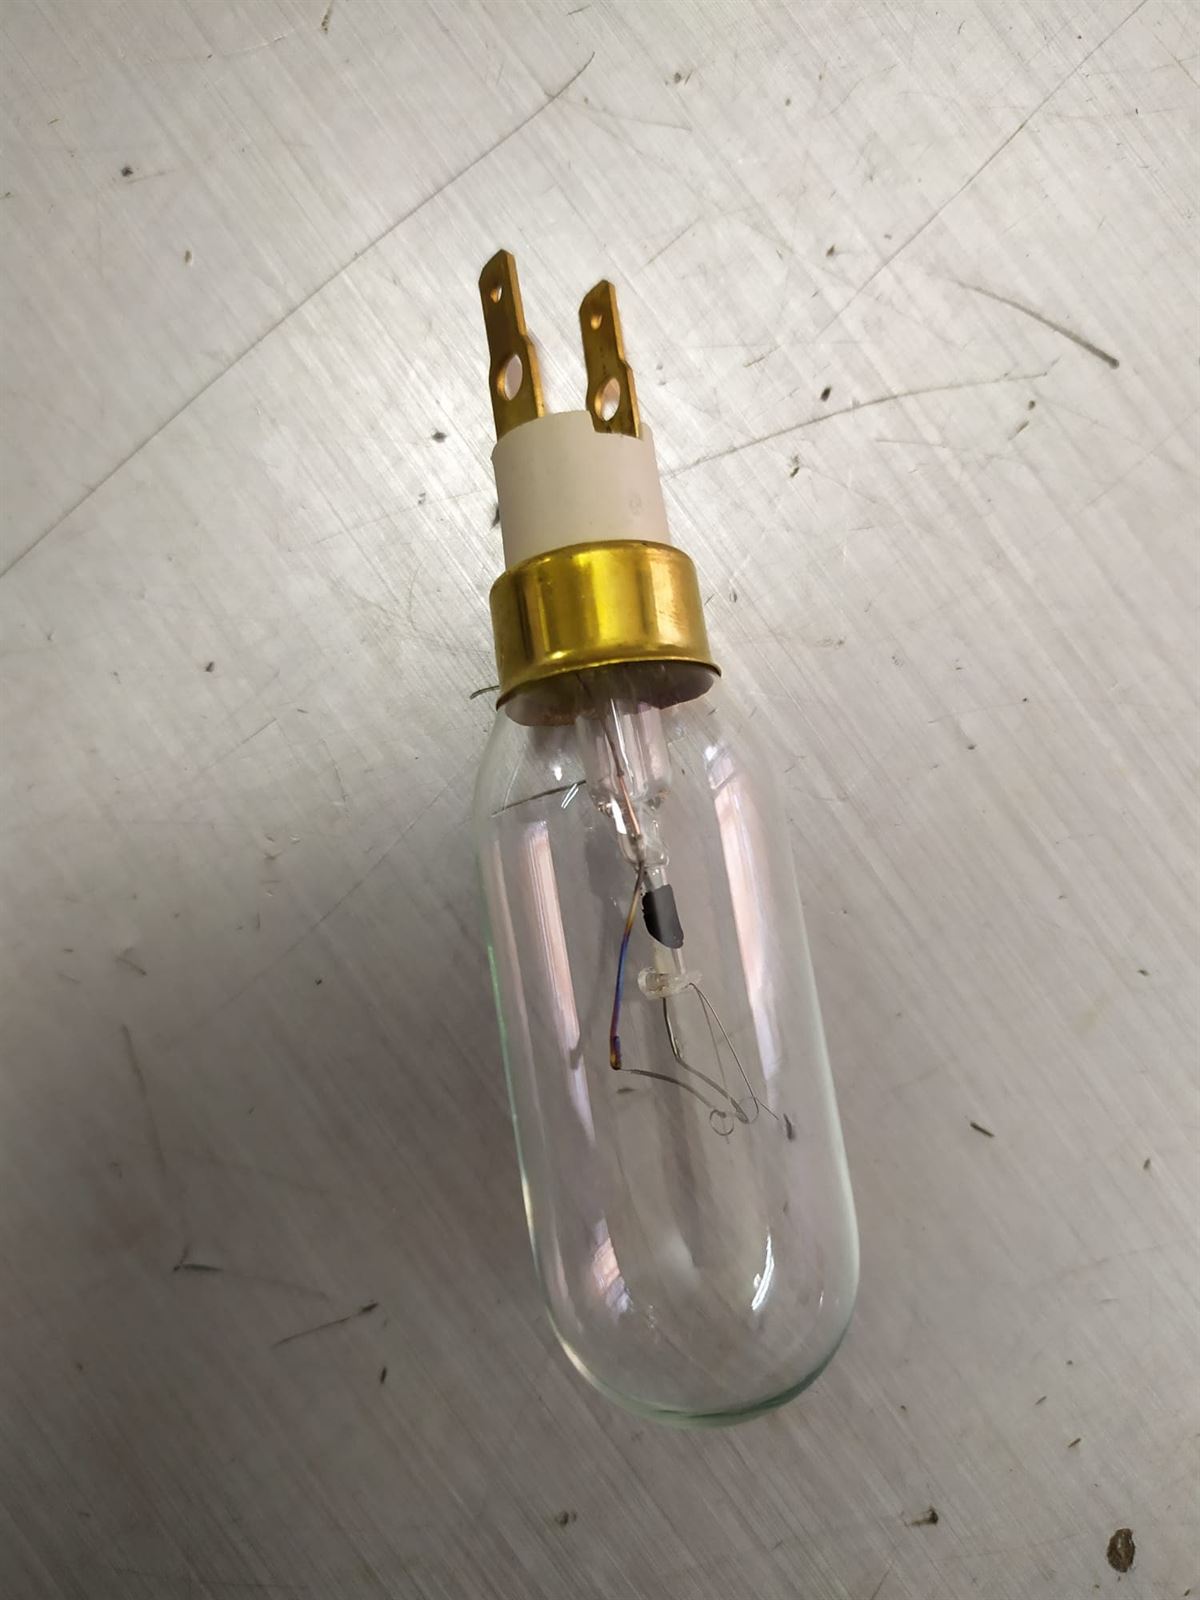 BOMBILLA LAMPARA CONGELADOR REFRIGERADOR, 40 W, 220V, 2 FASTON, 33FR0060 - Imagen 1